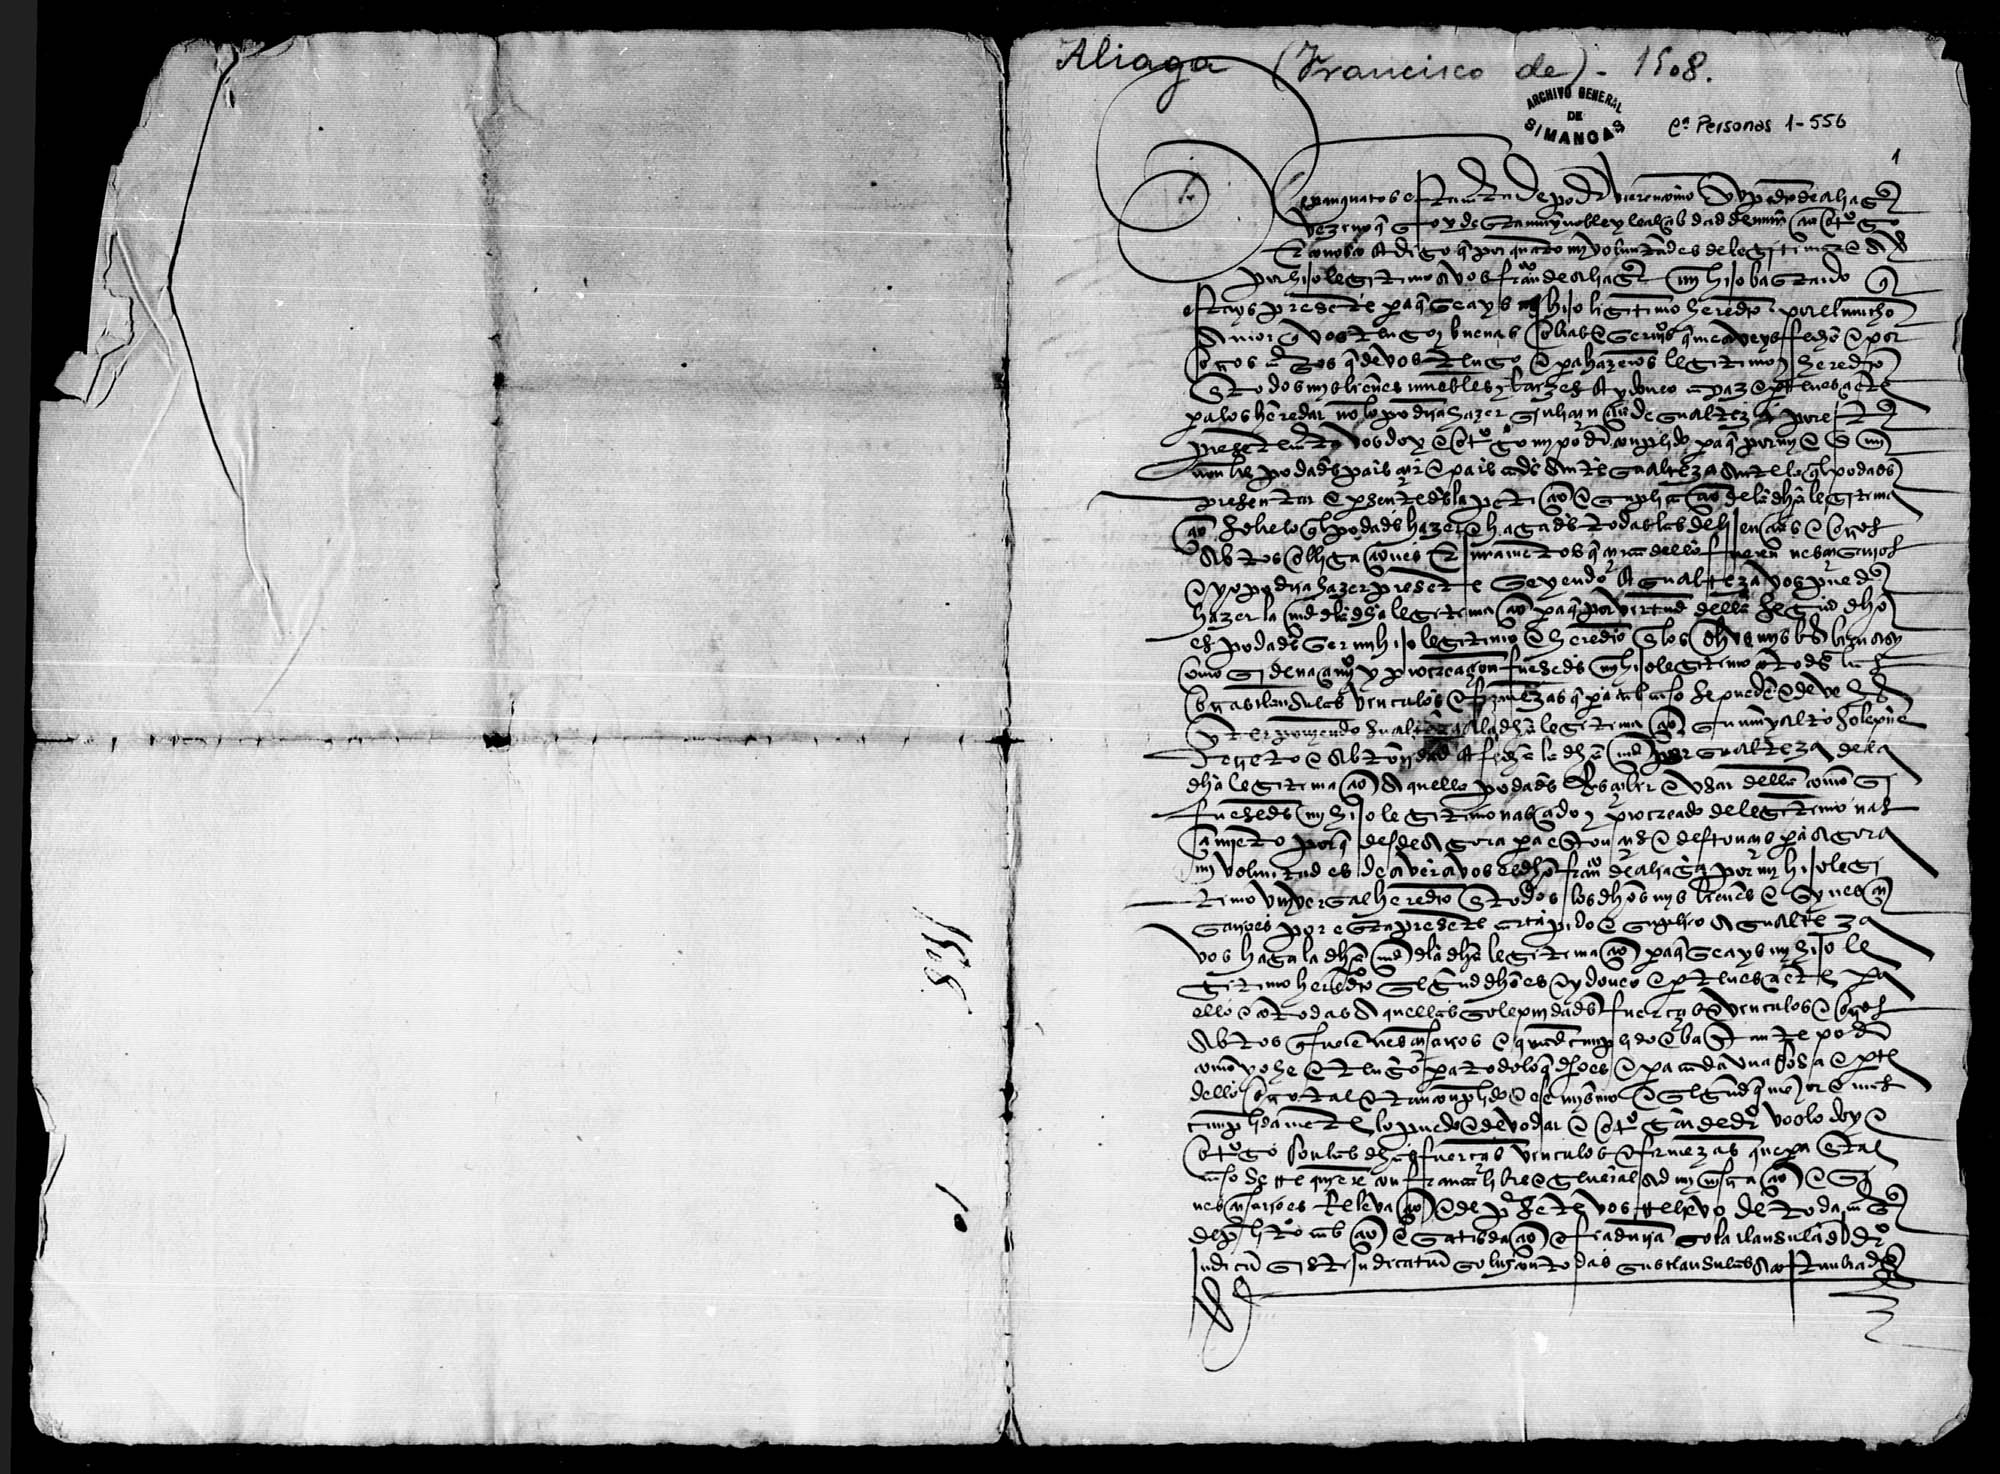 Carta de poder dada por Pedro de Aliaga, vecino de Murcia, a su hijo bastardo Francisco de Aliaga para que presente ante el Rey la petición de reconocimiento de éste como su hijo legítimo y heredero.